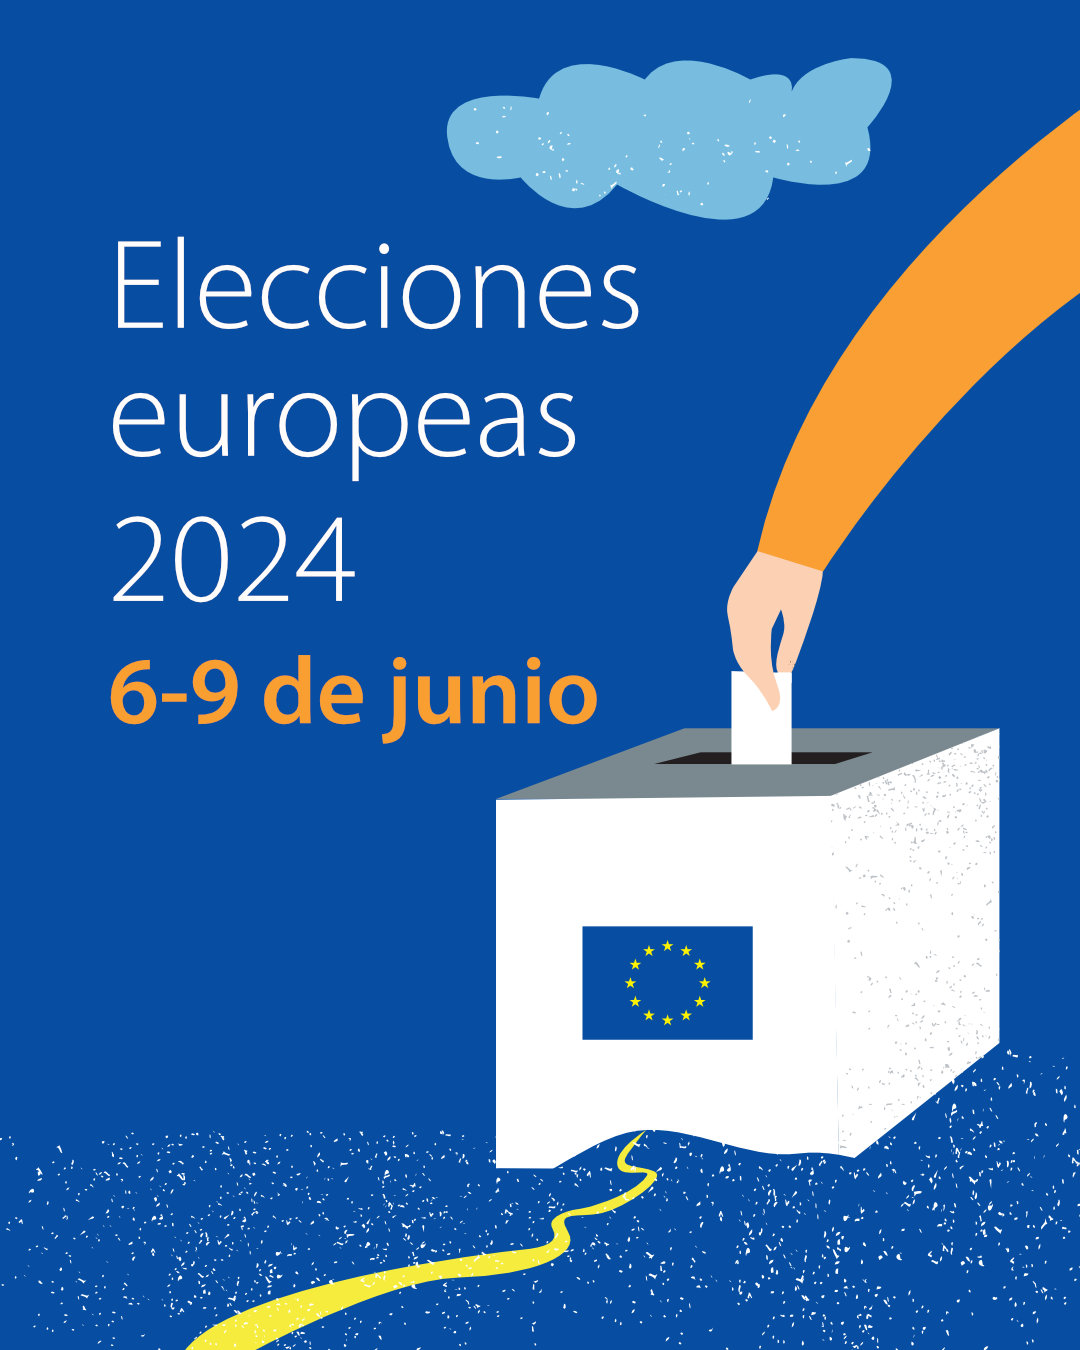 Elecciones europeas 2024 - 4:5